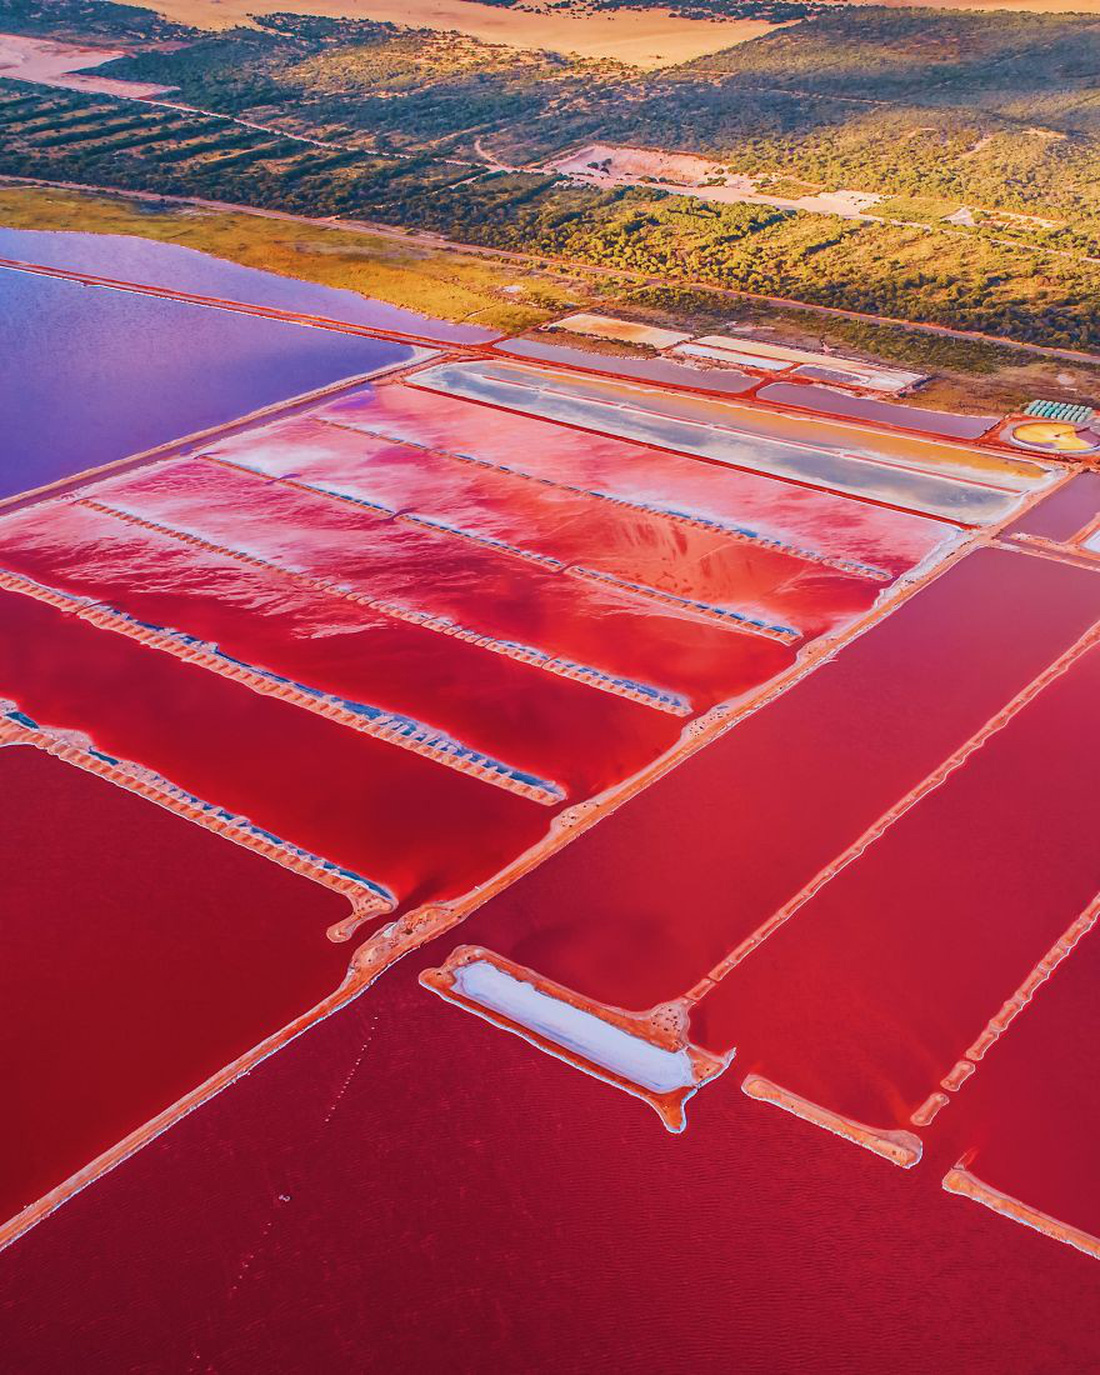 Kỳ lạ hồ nước màu hồng, đỏ, cam theo giờ - Ảnh 9.